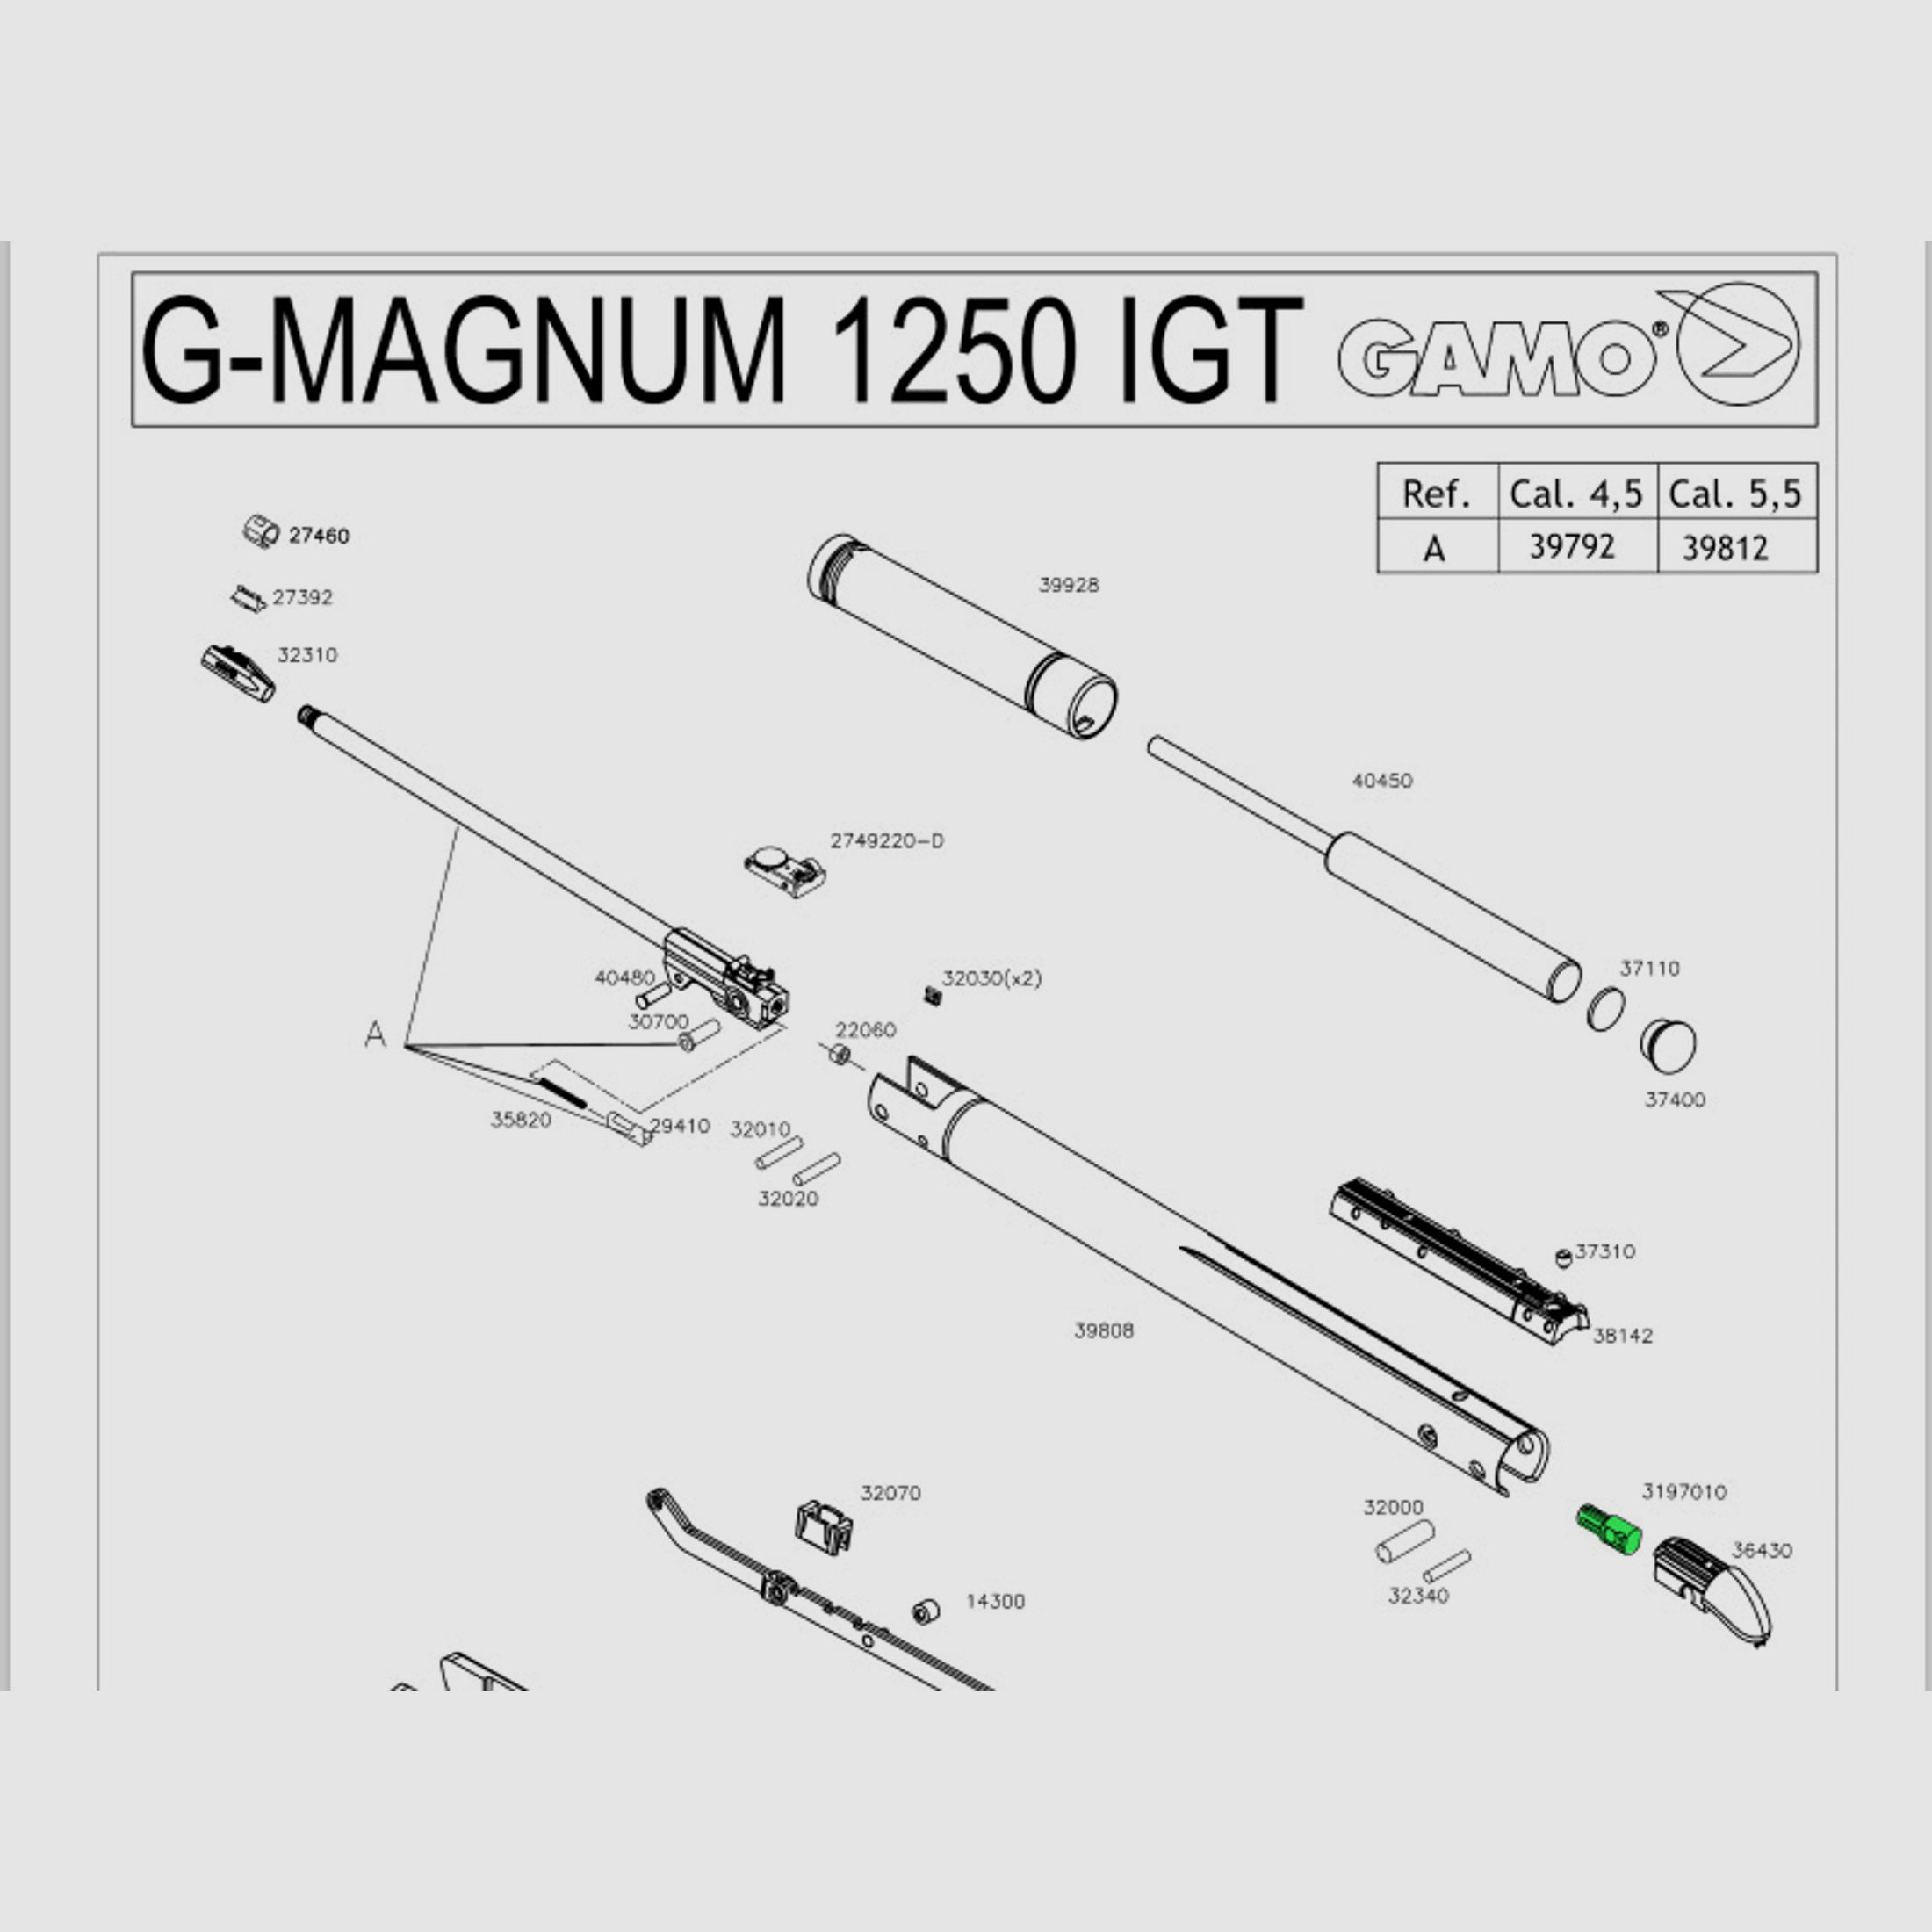 Kunststoffbuchse fĂĽr Luftgewehr Gamo G-Magnum 1250 Black Knight Black Fusion Black Bull und die IGT, Ersatzteil